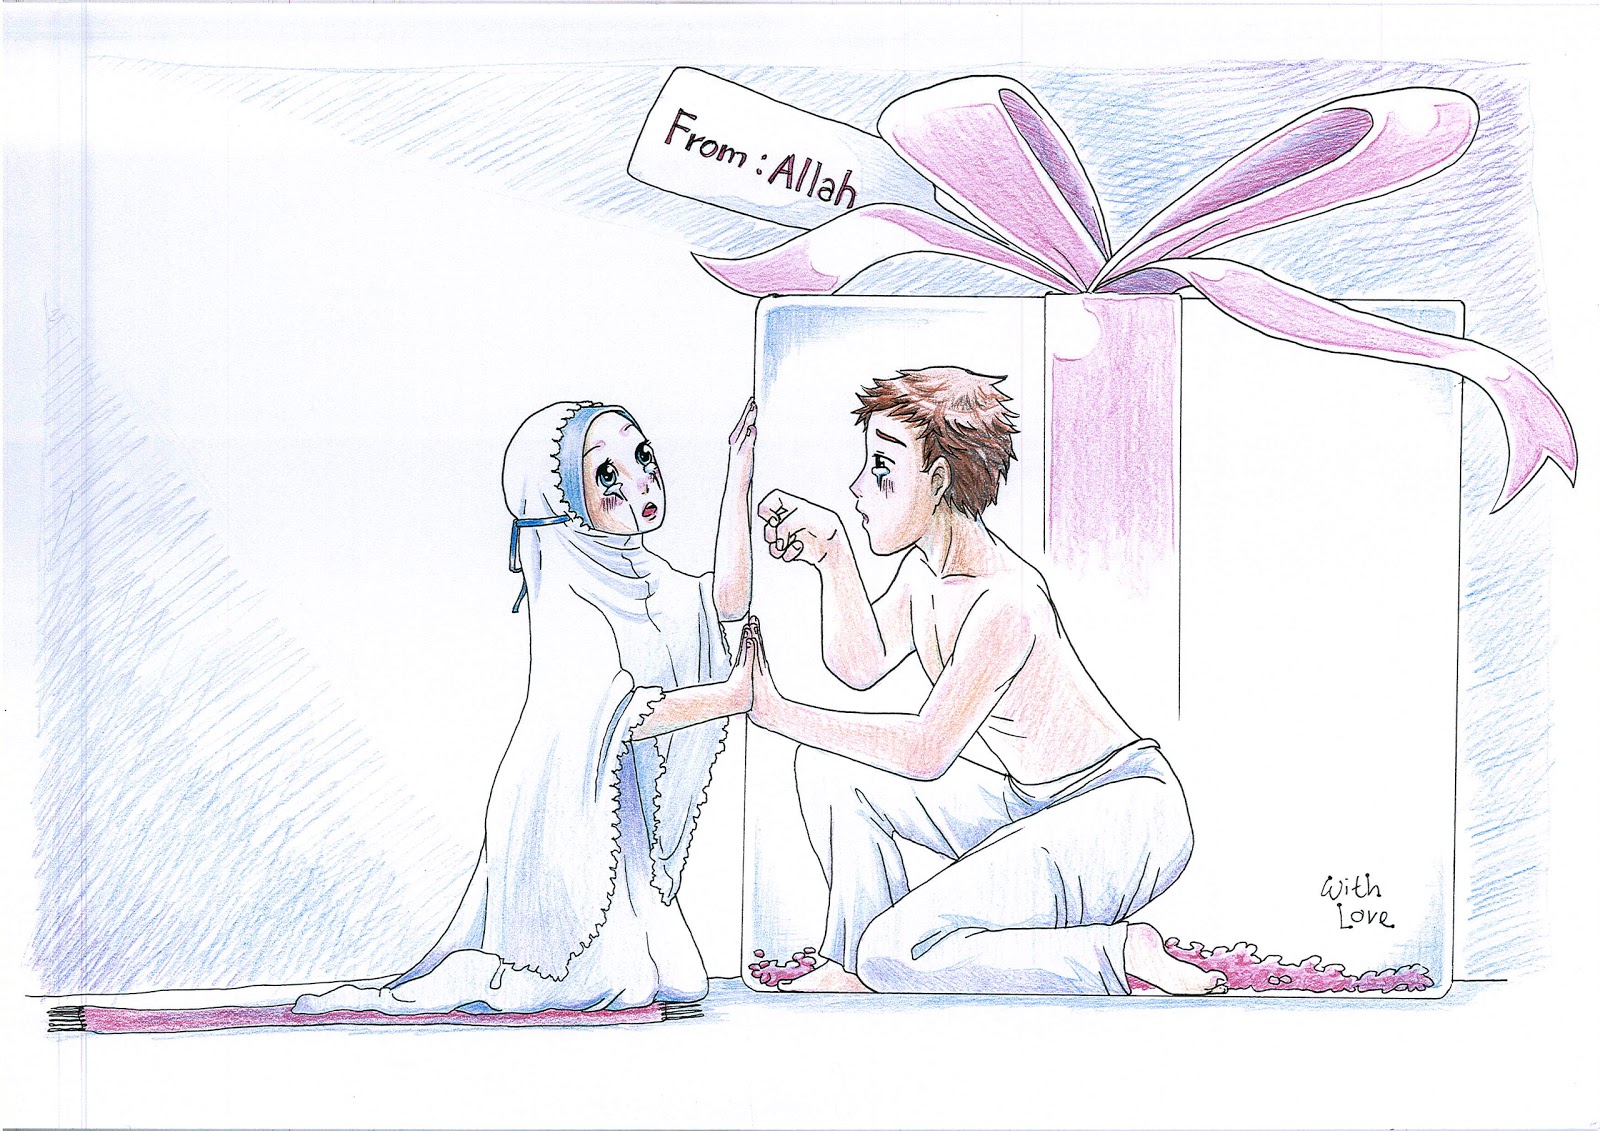 Komik Dakwah Cinta Pada Wallpaper Muslim Drawing The Gift Of Love